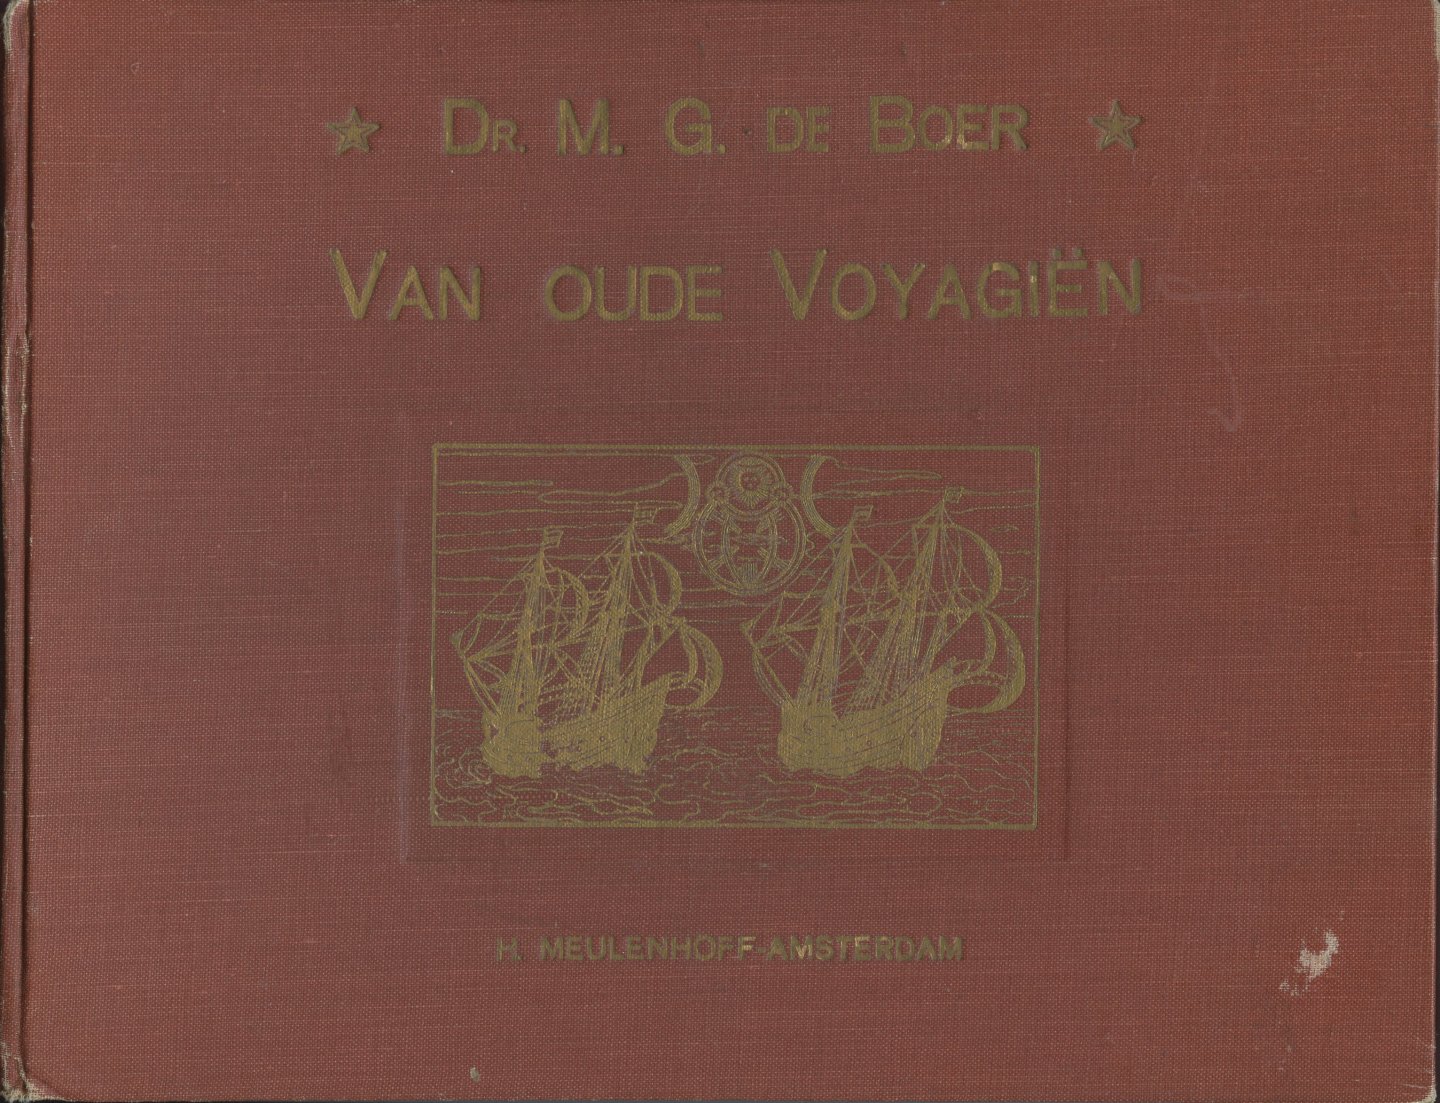 Boer, M.G. de - Van oude Voyagiën